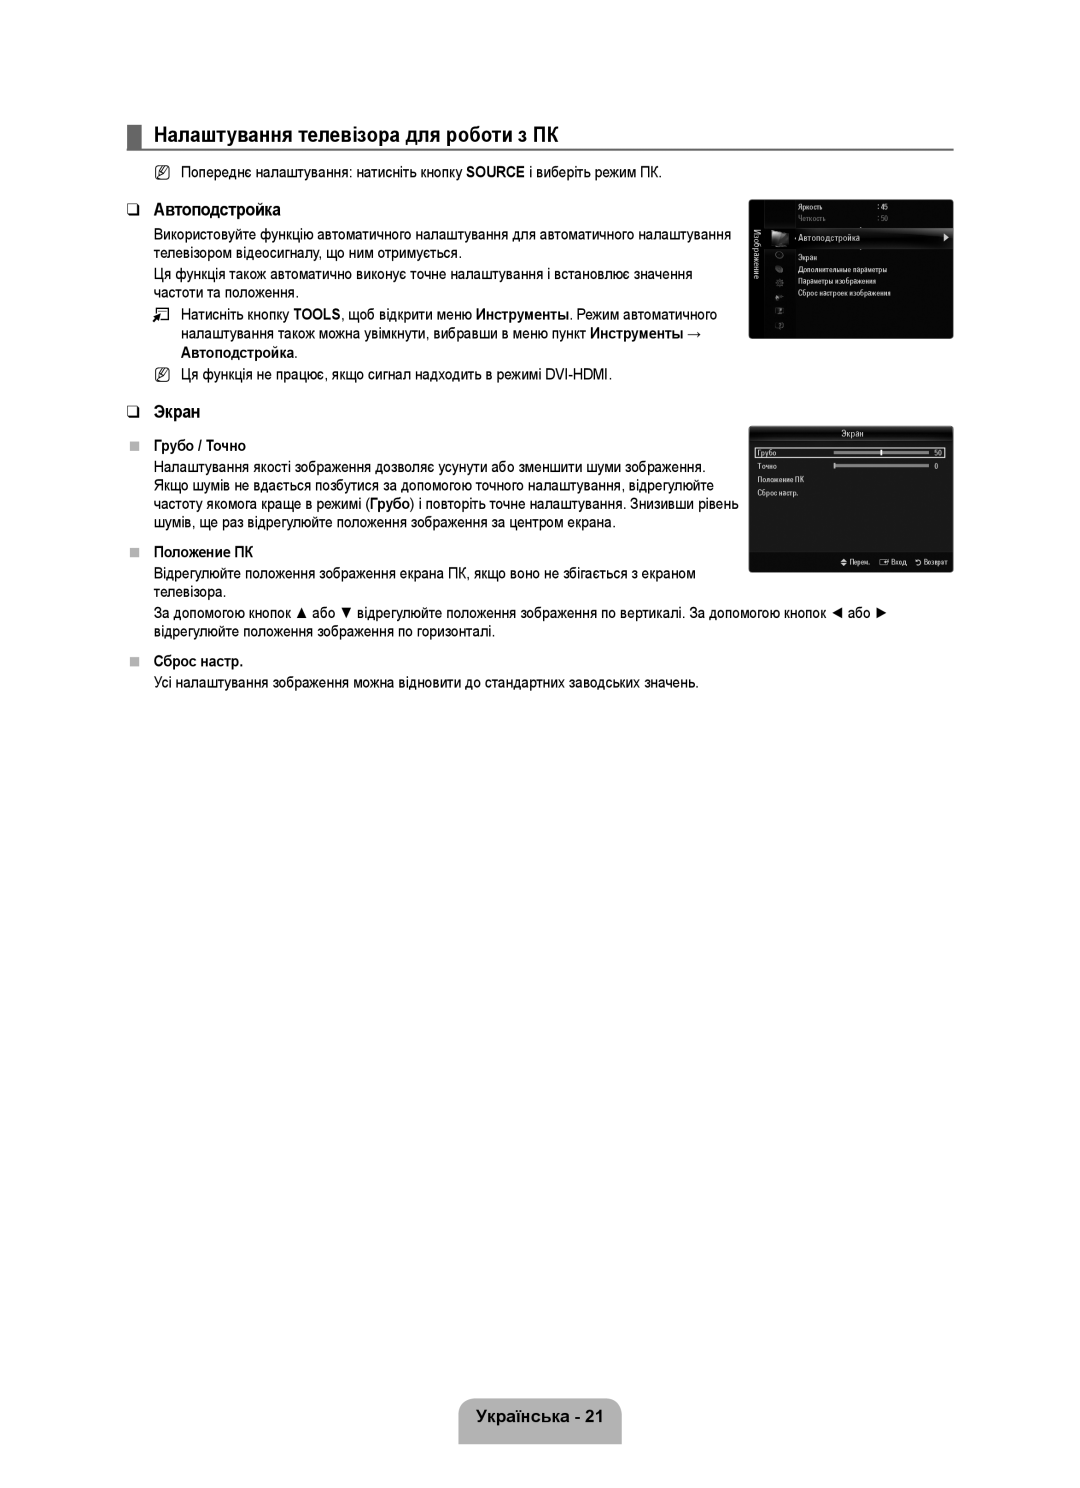 Samsung UE46B6000VWXZG manual Налаштування телевізора для роботи з ПК, Автоподстройка, Экран, Українська, Грубо / Точно 